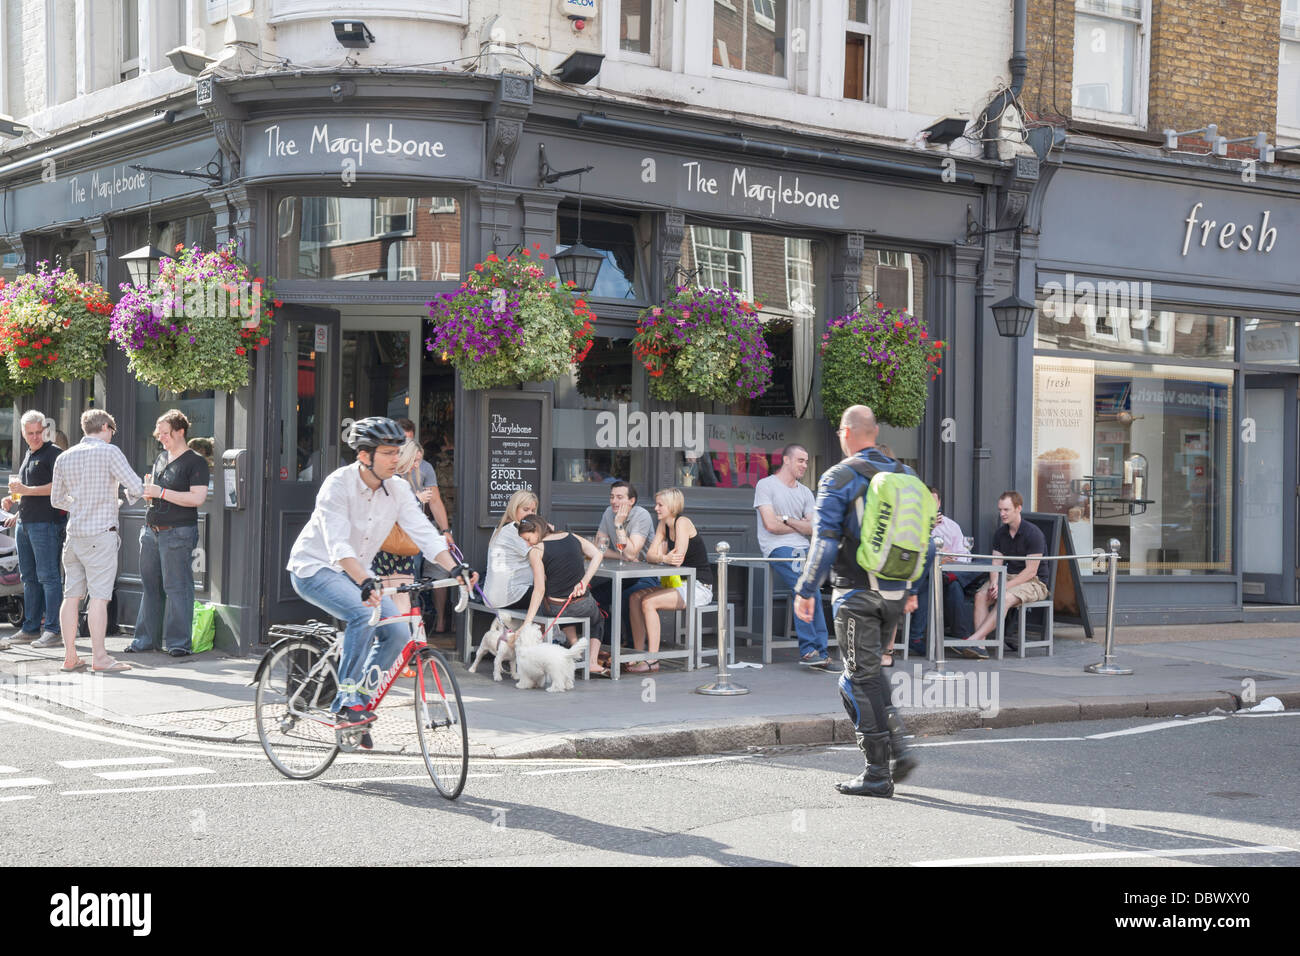 The Marylebone Pub, Marylebone High Street, London, England, UK Stock Photo